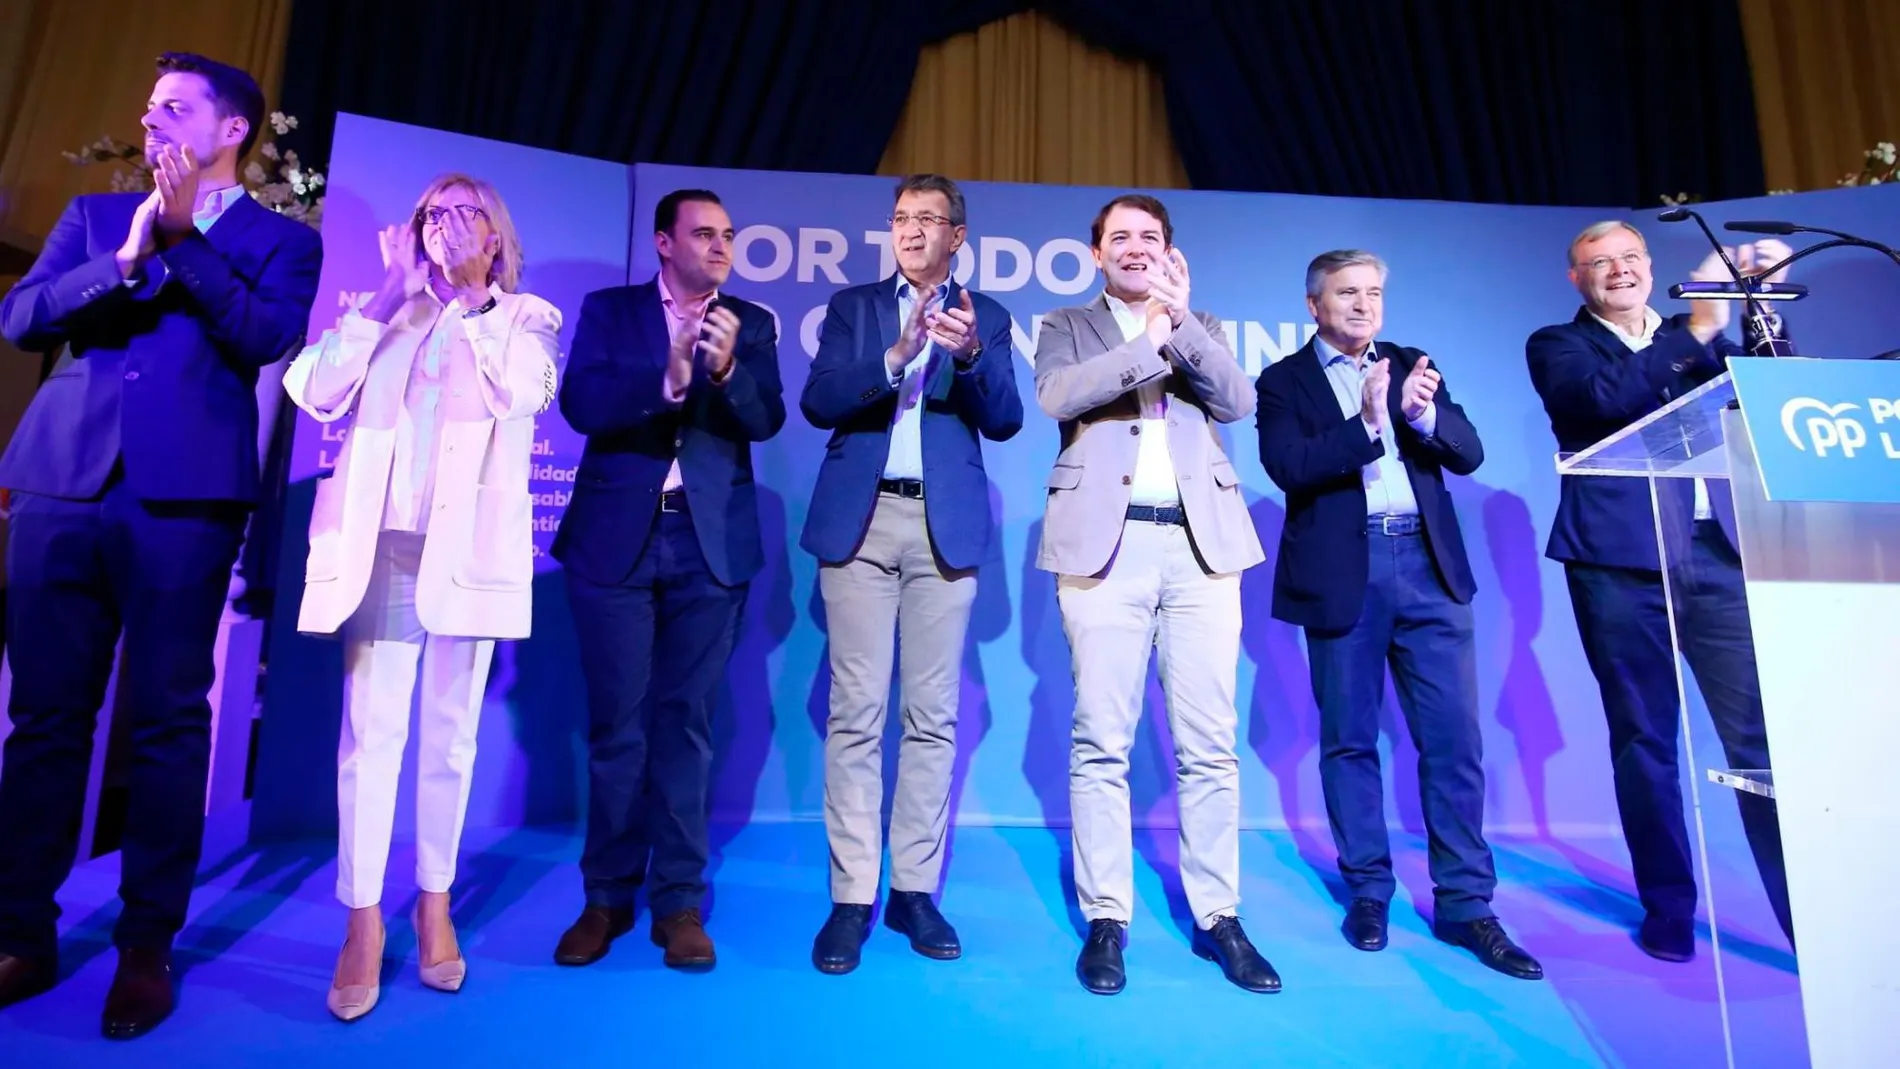 Fernández Mañueco aplaude a los presentes tras intervenir en el acto, en compañía de Antonio Silván, Raúl Valcarce o Martínez Majo, entre otros